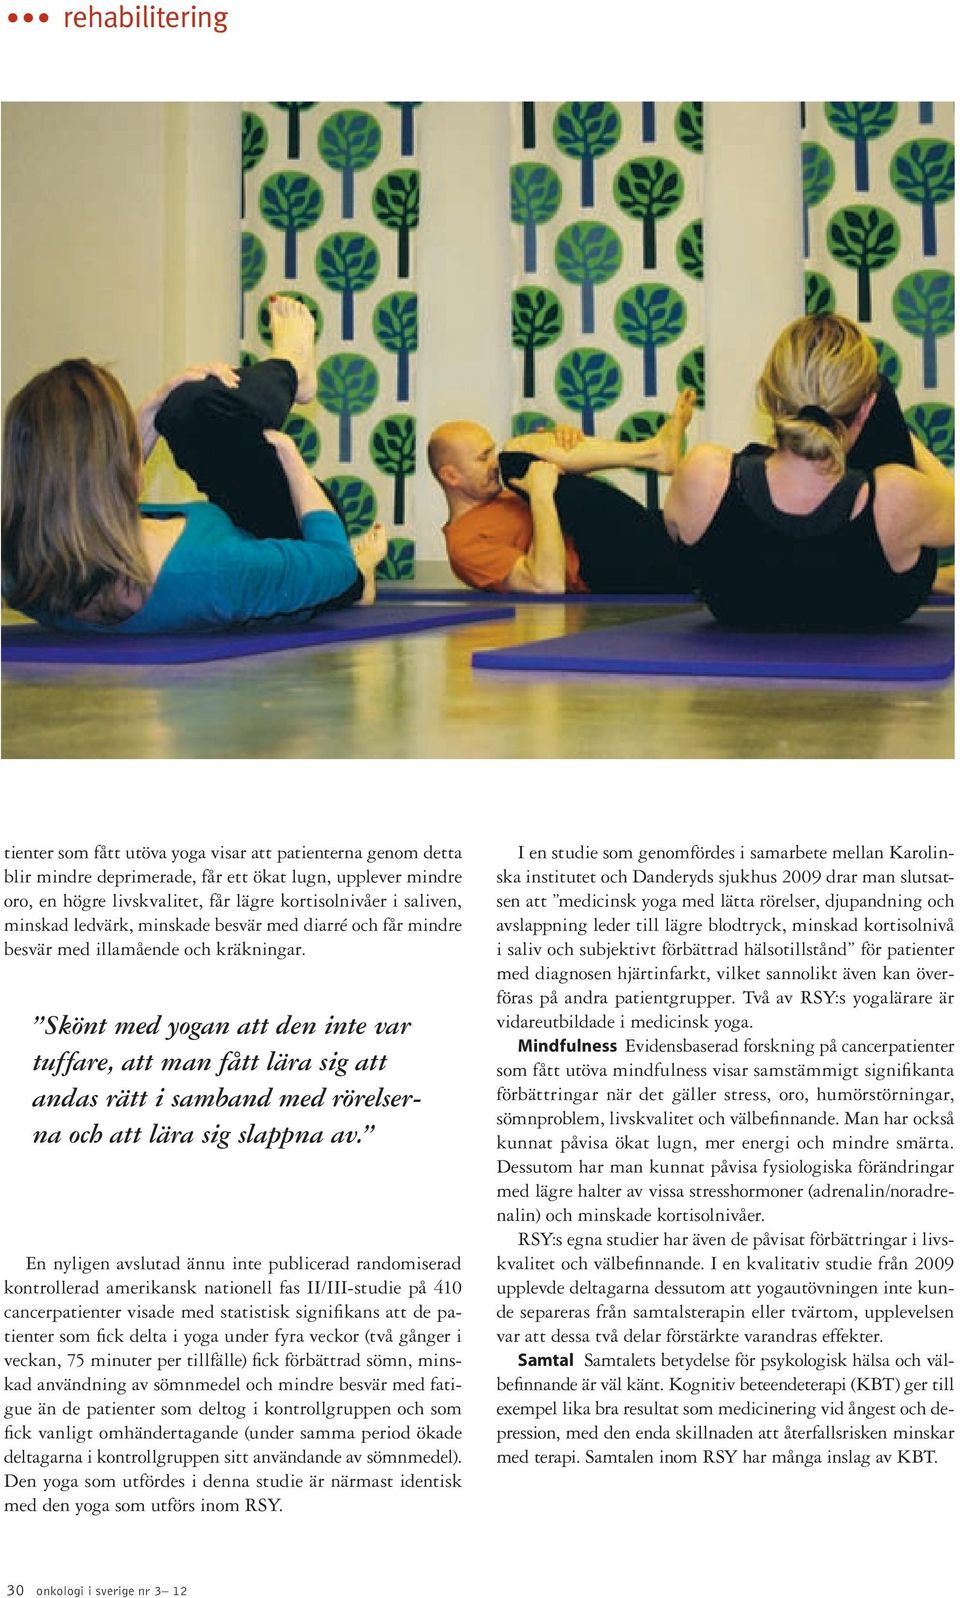 Skönt med yogan att den inte var tuffare, att man fått lära sig att andas rätt i samband med rörelserna och att lära sig slappna av.